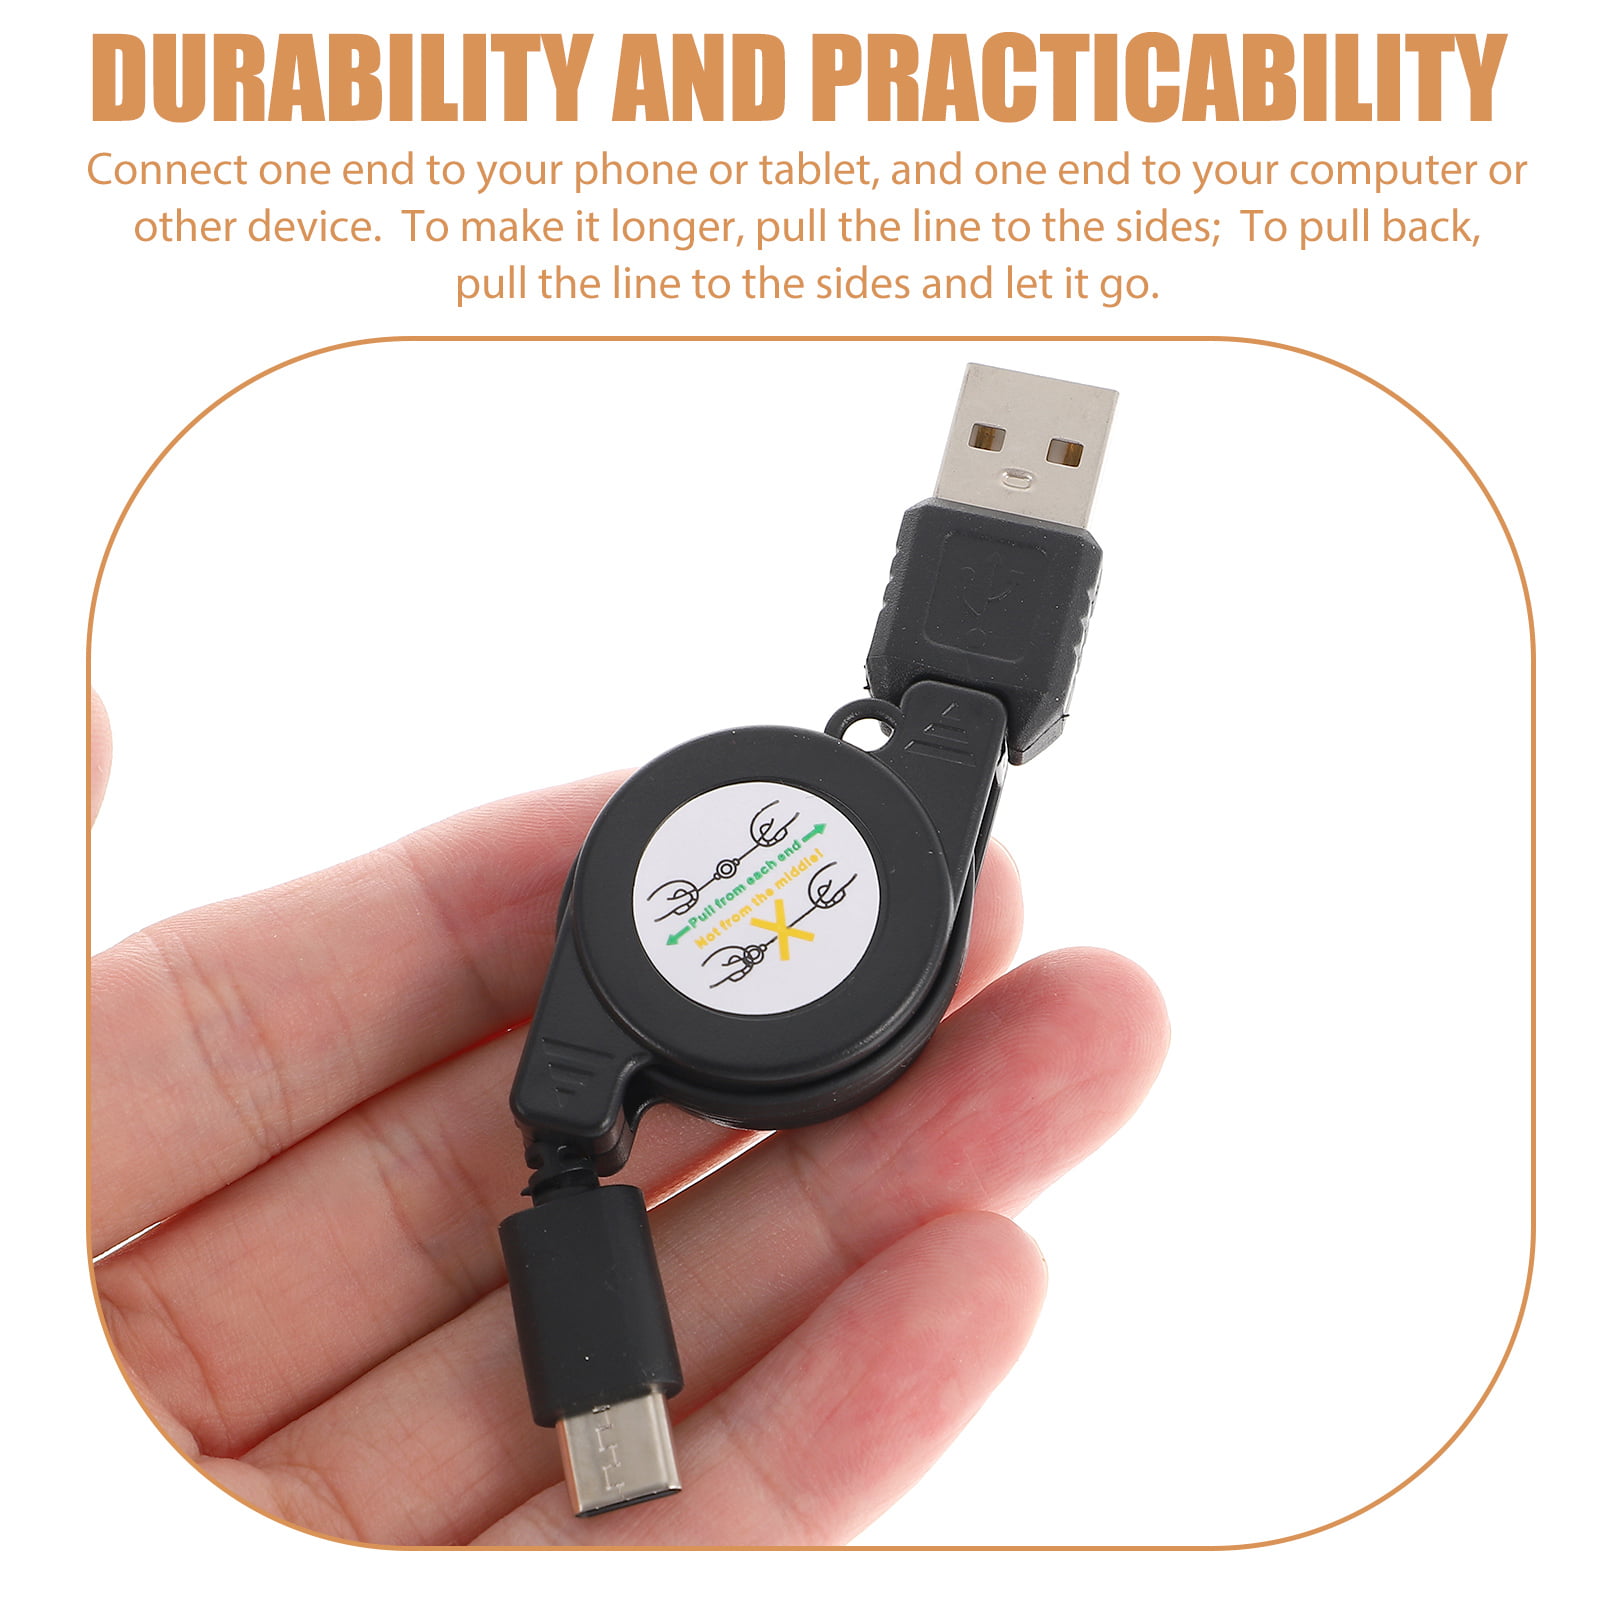 ReTrak Câble USB-C vers USB-C Synchronisation Rétractable 12.5 cm à 105 cm  Noir - Câble & Adaptateur - LDLC